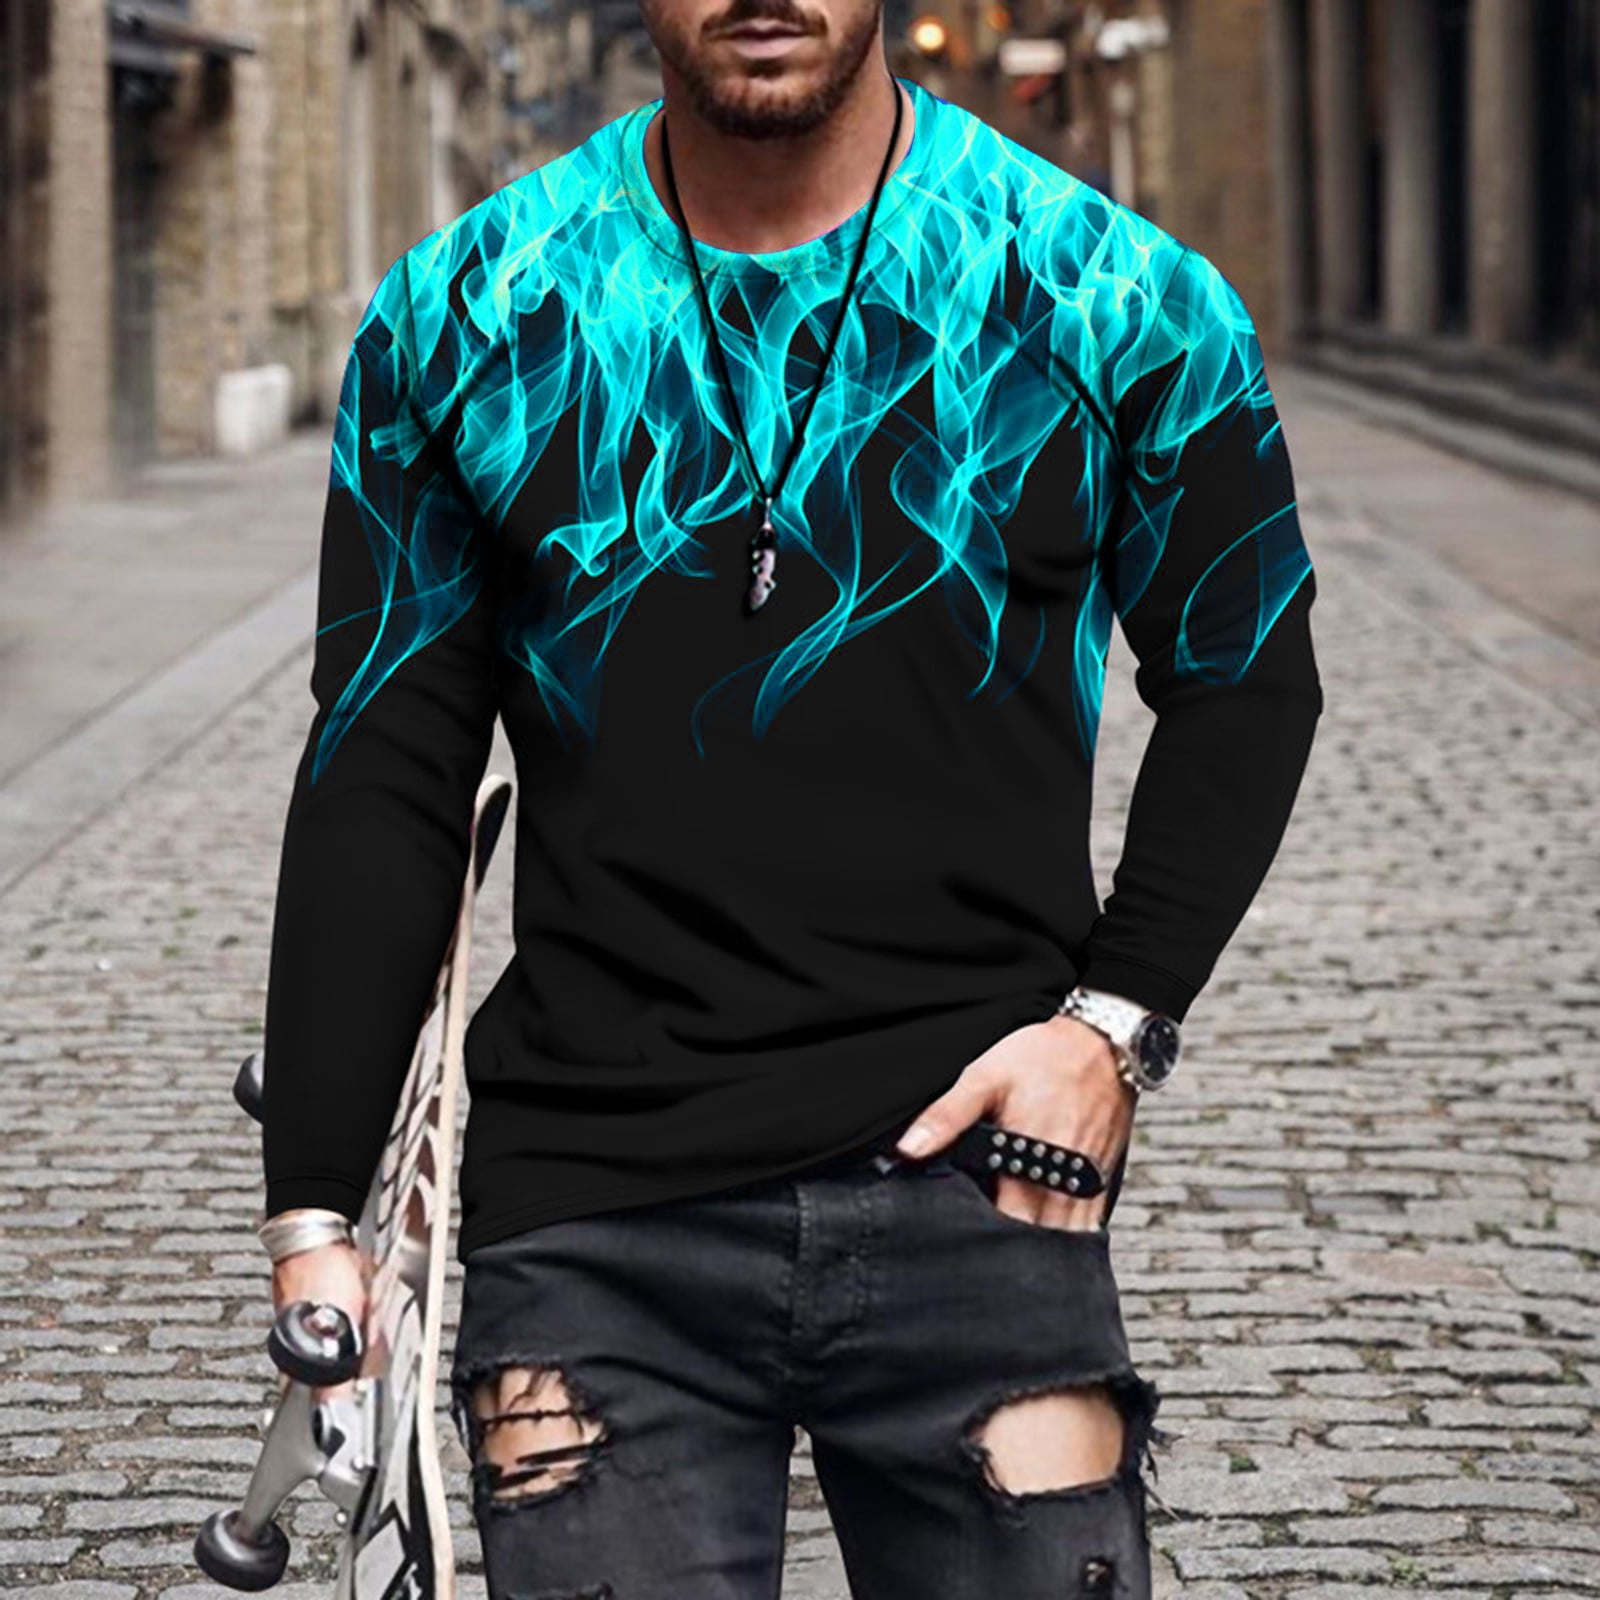 3D Graphic Tee for Men Fashion Fire Print Tshirt,Mens Slim Fit